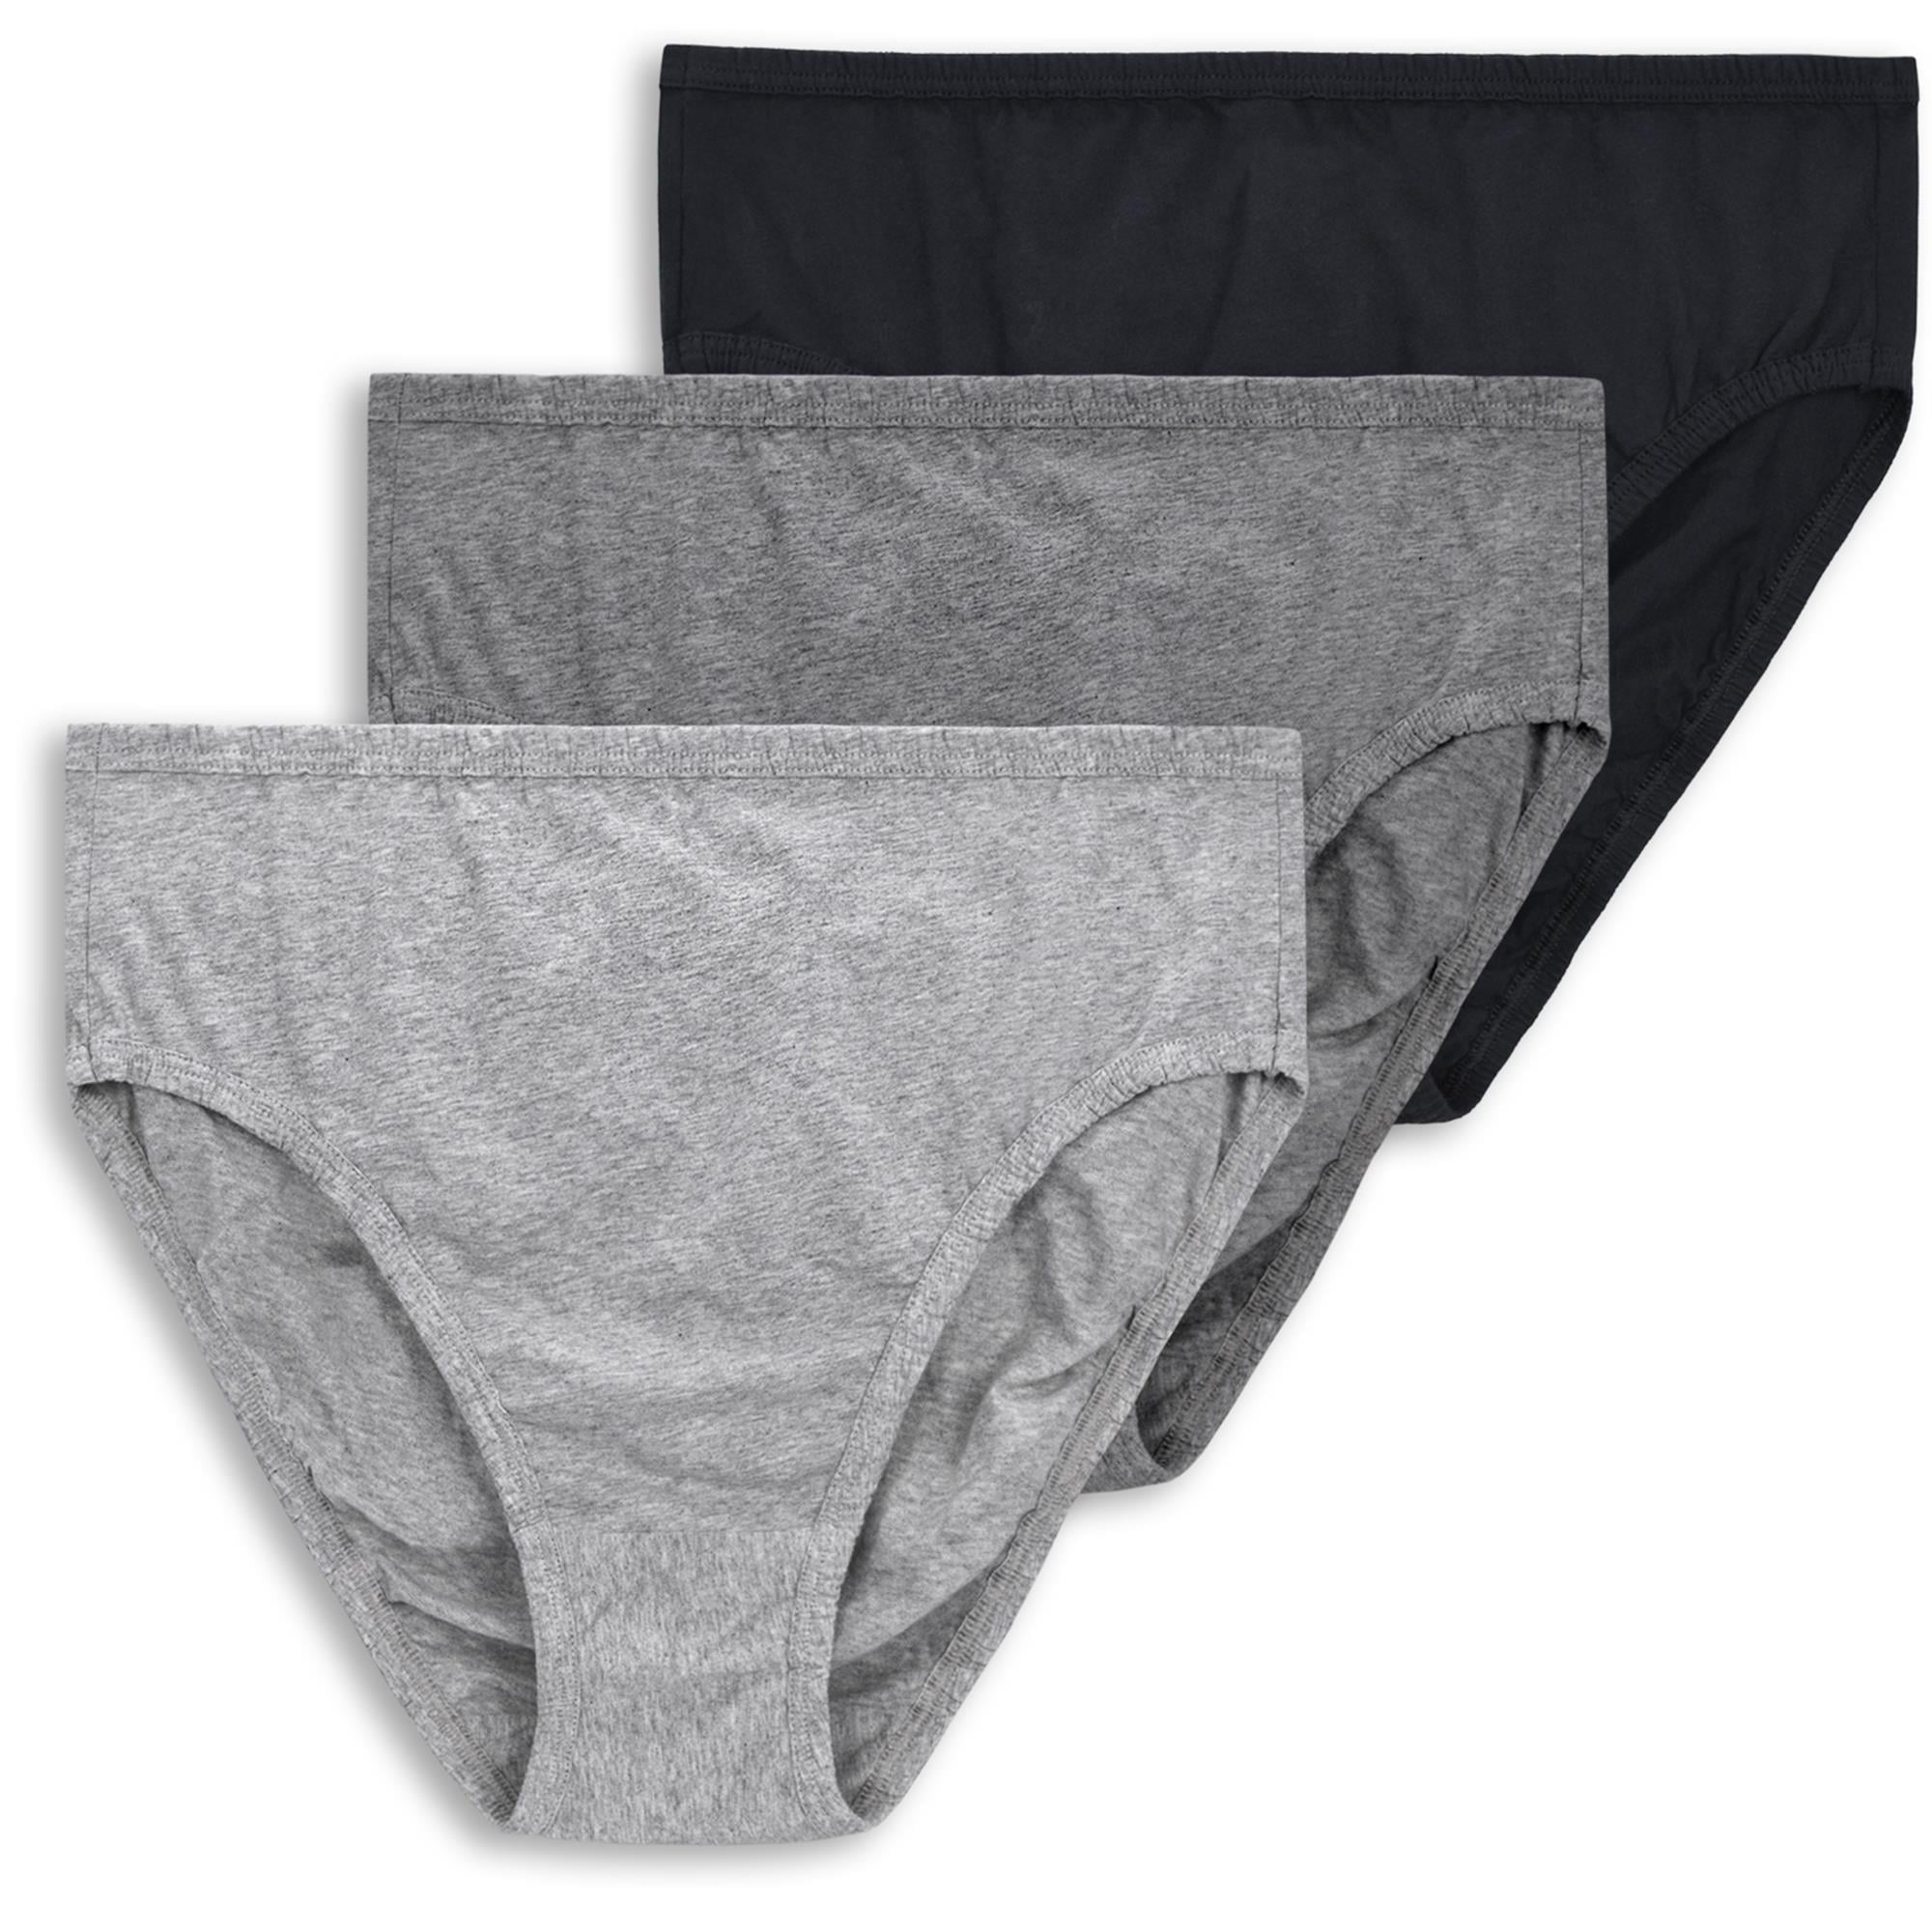 Wingslove 3 Pack Women's Plus Size Comfort Soft Cotton Underwear